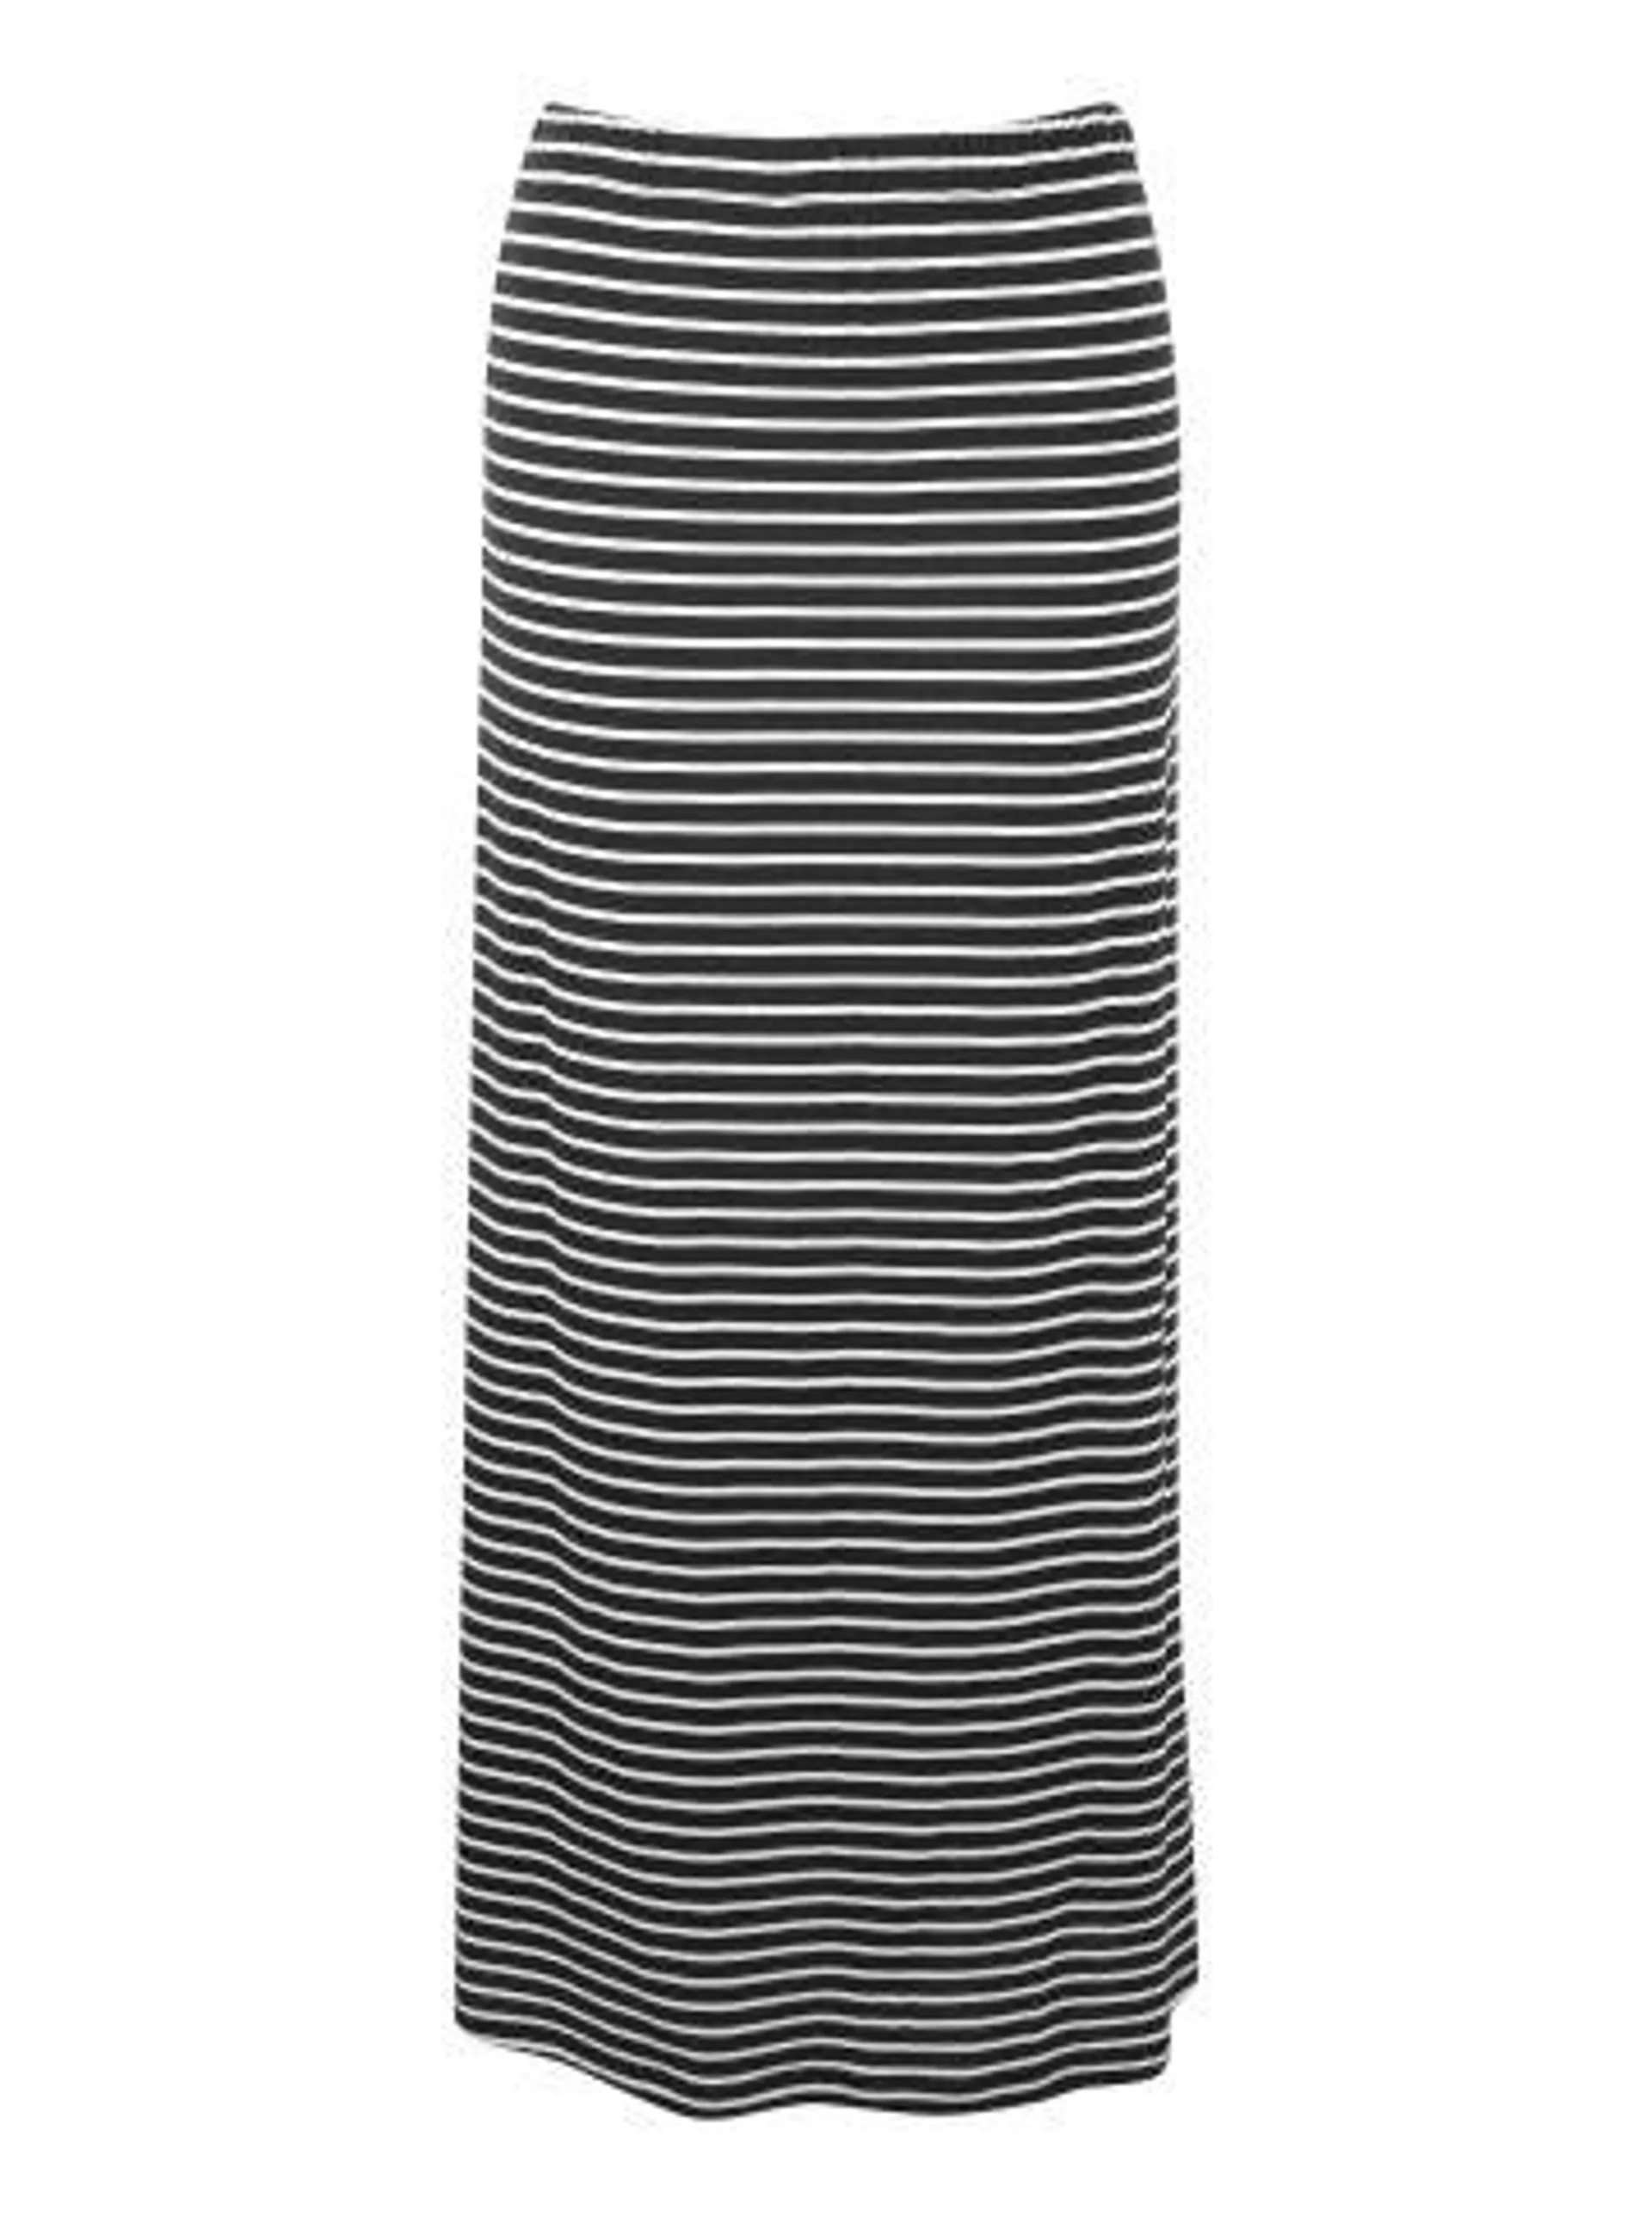 Women's Jersey Maxi Skirt in Black / White